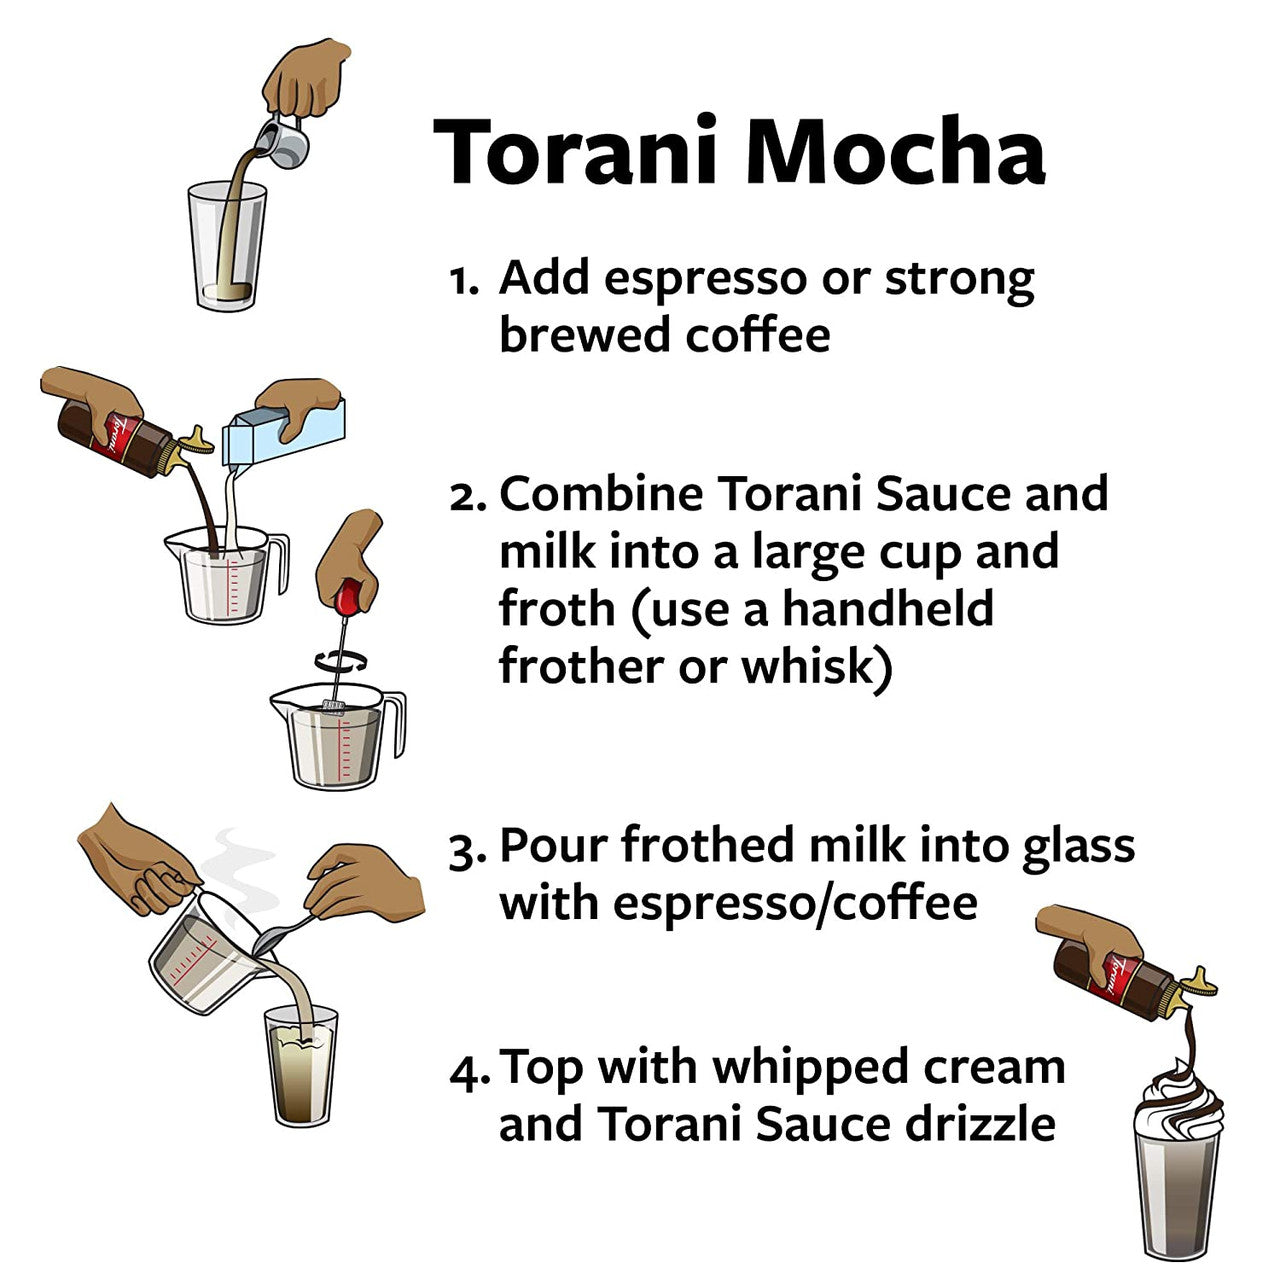 Torani Sugar Free Caramel Sauce - 64 oz. Bottle